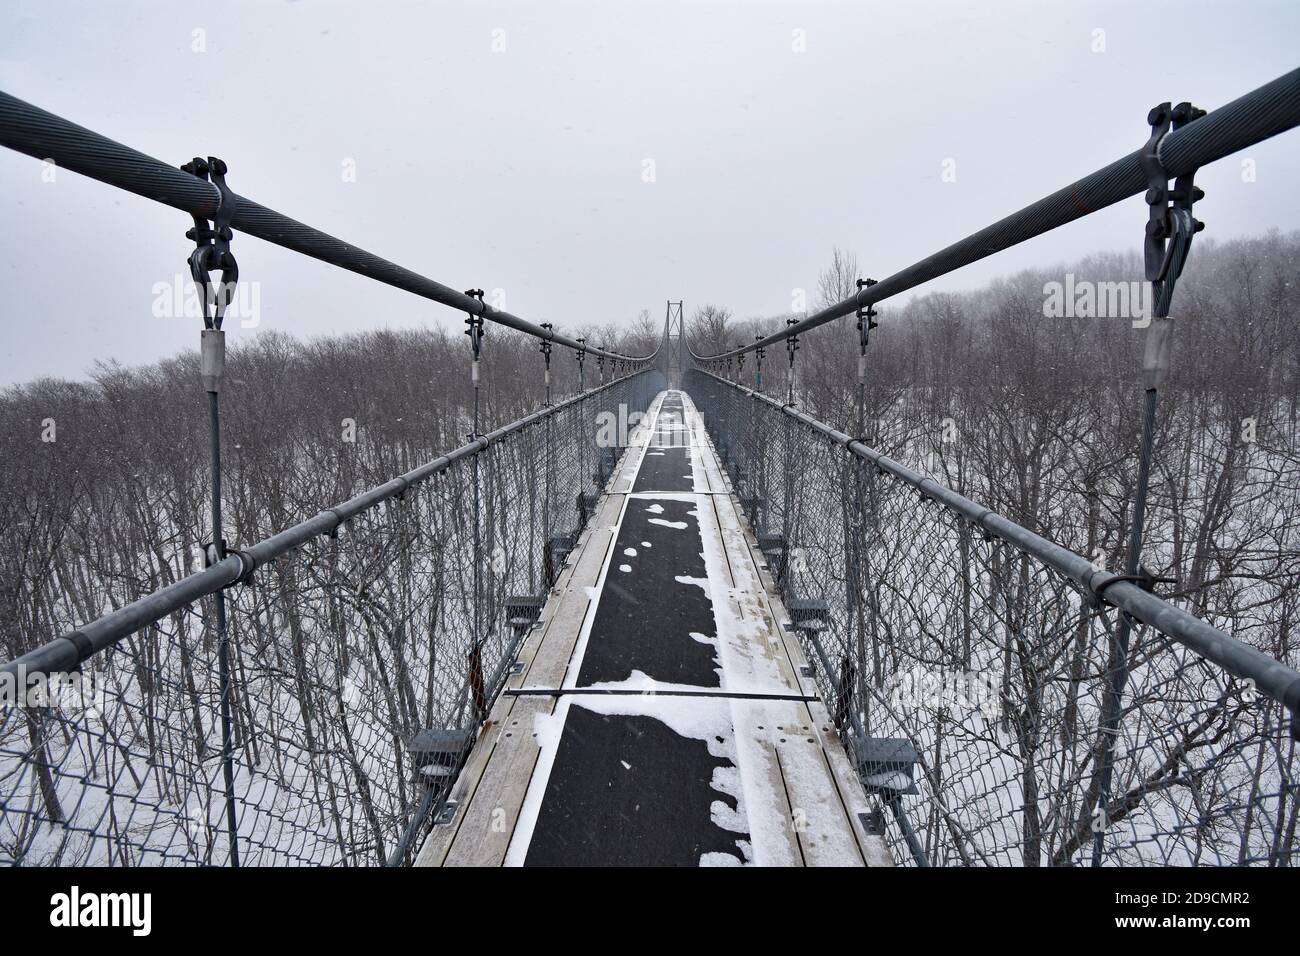 Un pont suspendu vide dans l'escarpement du Niagara pendant l'hiver. La neige tombe sur le pont et les arbres environnants. Grottes pittoresques, Ontario, Canada. Banque D'Images